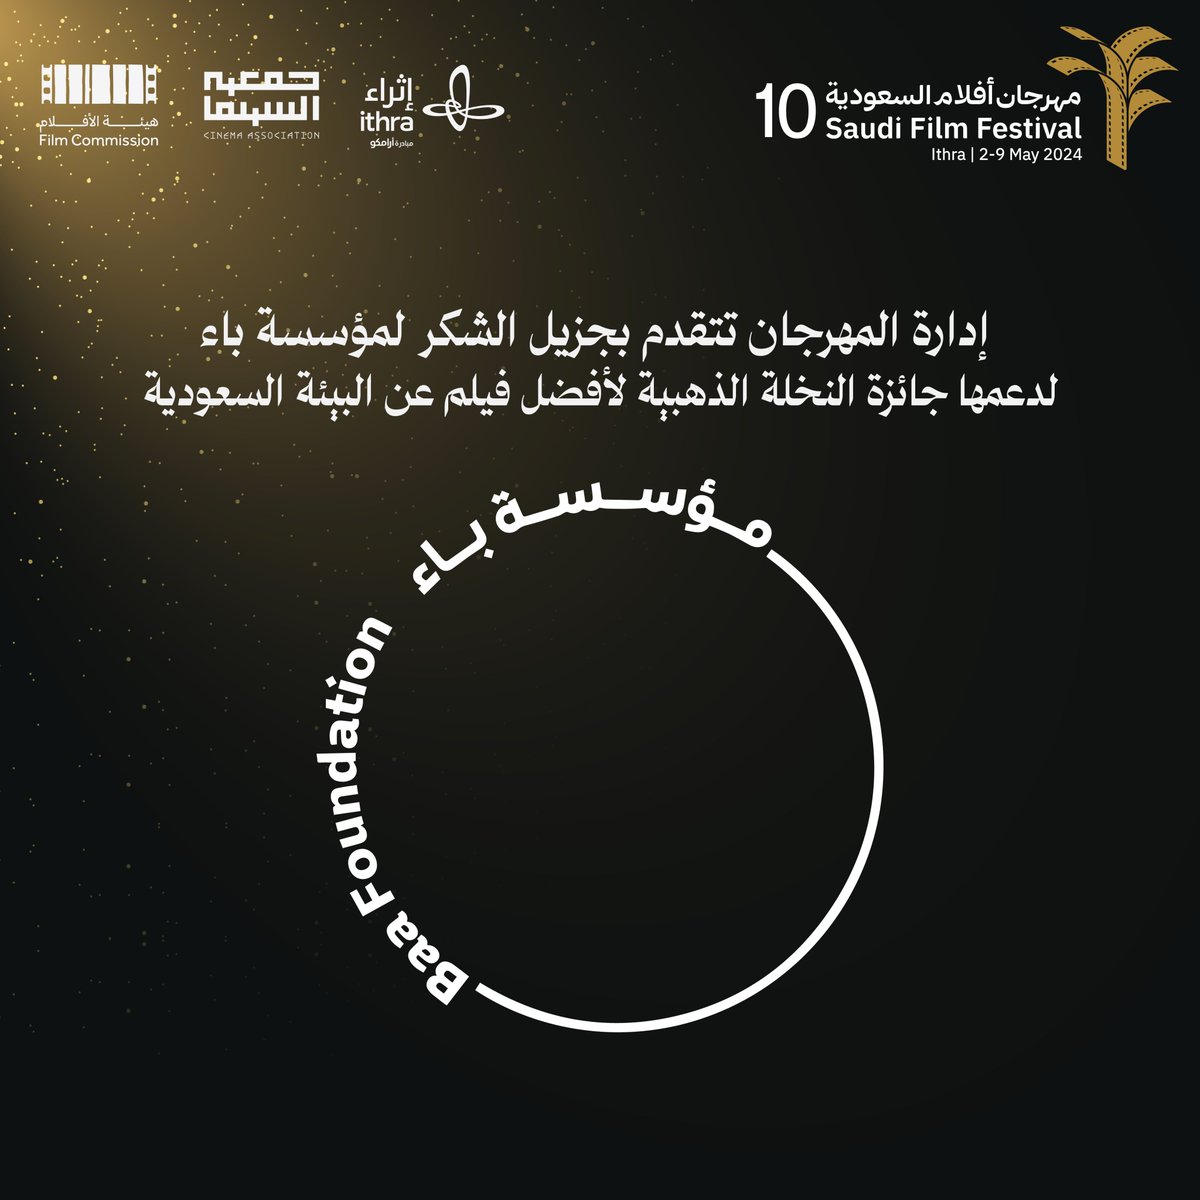 تتقدم إدارة #مهرجان_أفلام_السعودية بجزيل الشكر لمؤسسة باء المعنية بتمكين المبادرات الثقافية والبيئية؛ لدعمها جائزة النخلة الذهبية لأفضل فيلم عن البيئة السعودية والتي كانت من نصيب فيلم 'هورايزن'.